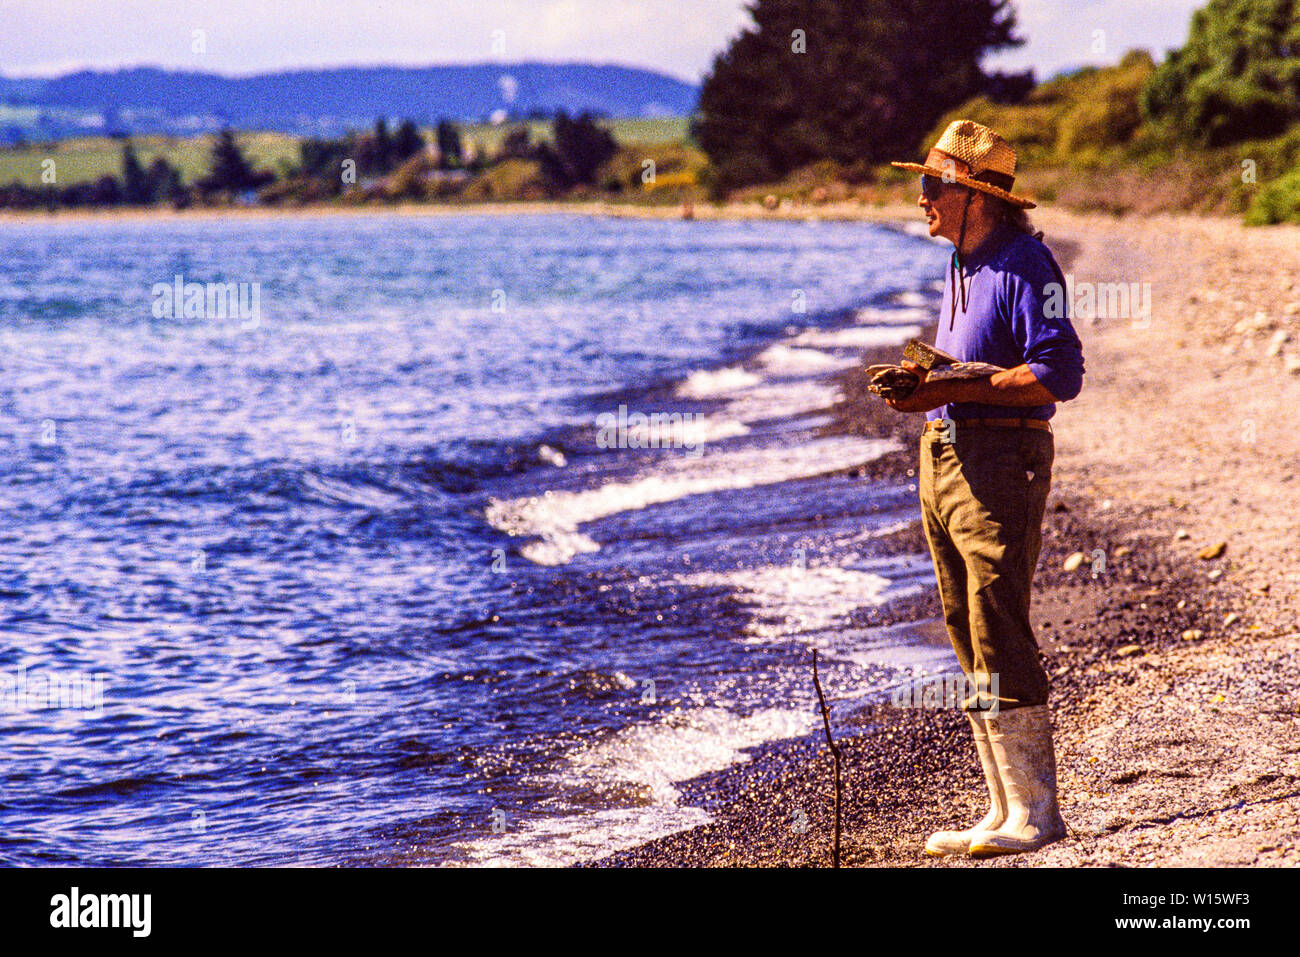 Nueva Zelanda, el norte de la isla. Hombres pescando en el Lago Taupo, una nota de pesca de truchas con las existencias de la introducción de la trucha arco iris y marrón. Foto tomada el 19 de noviembre Foto de stock